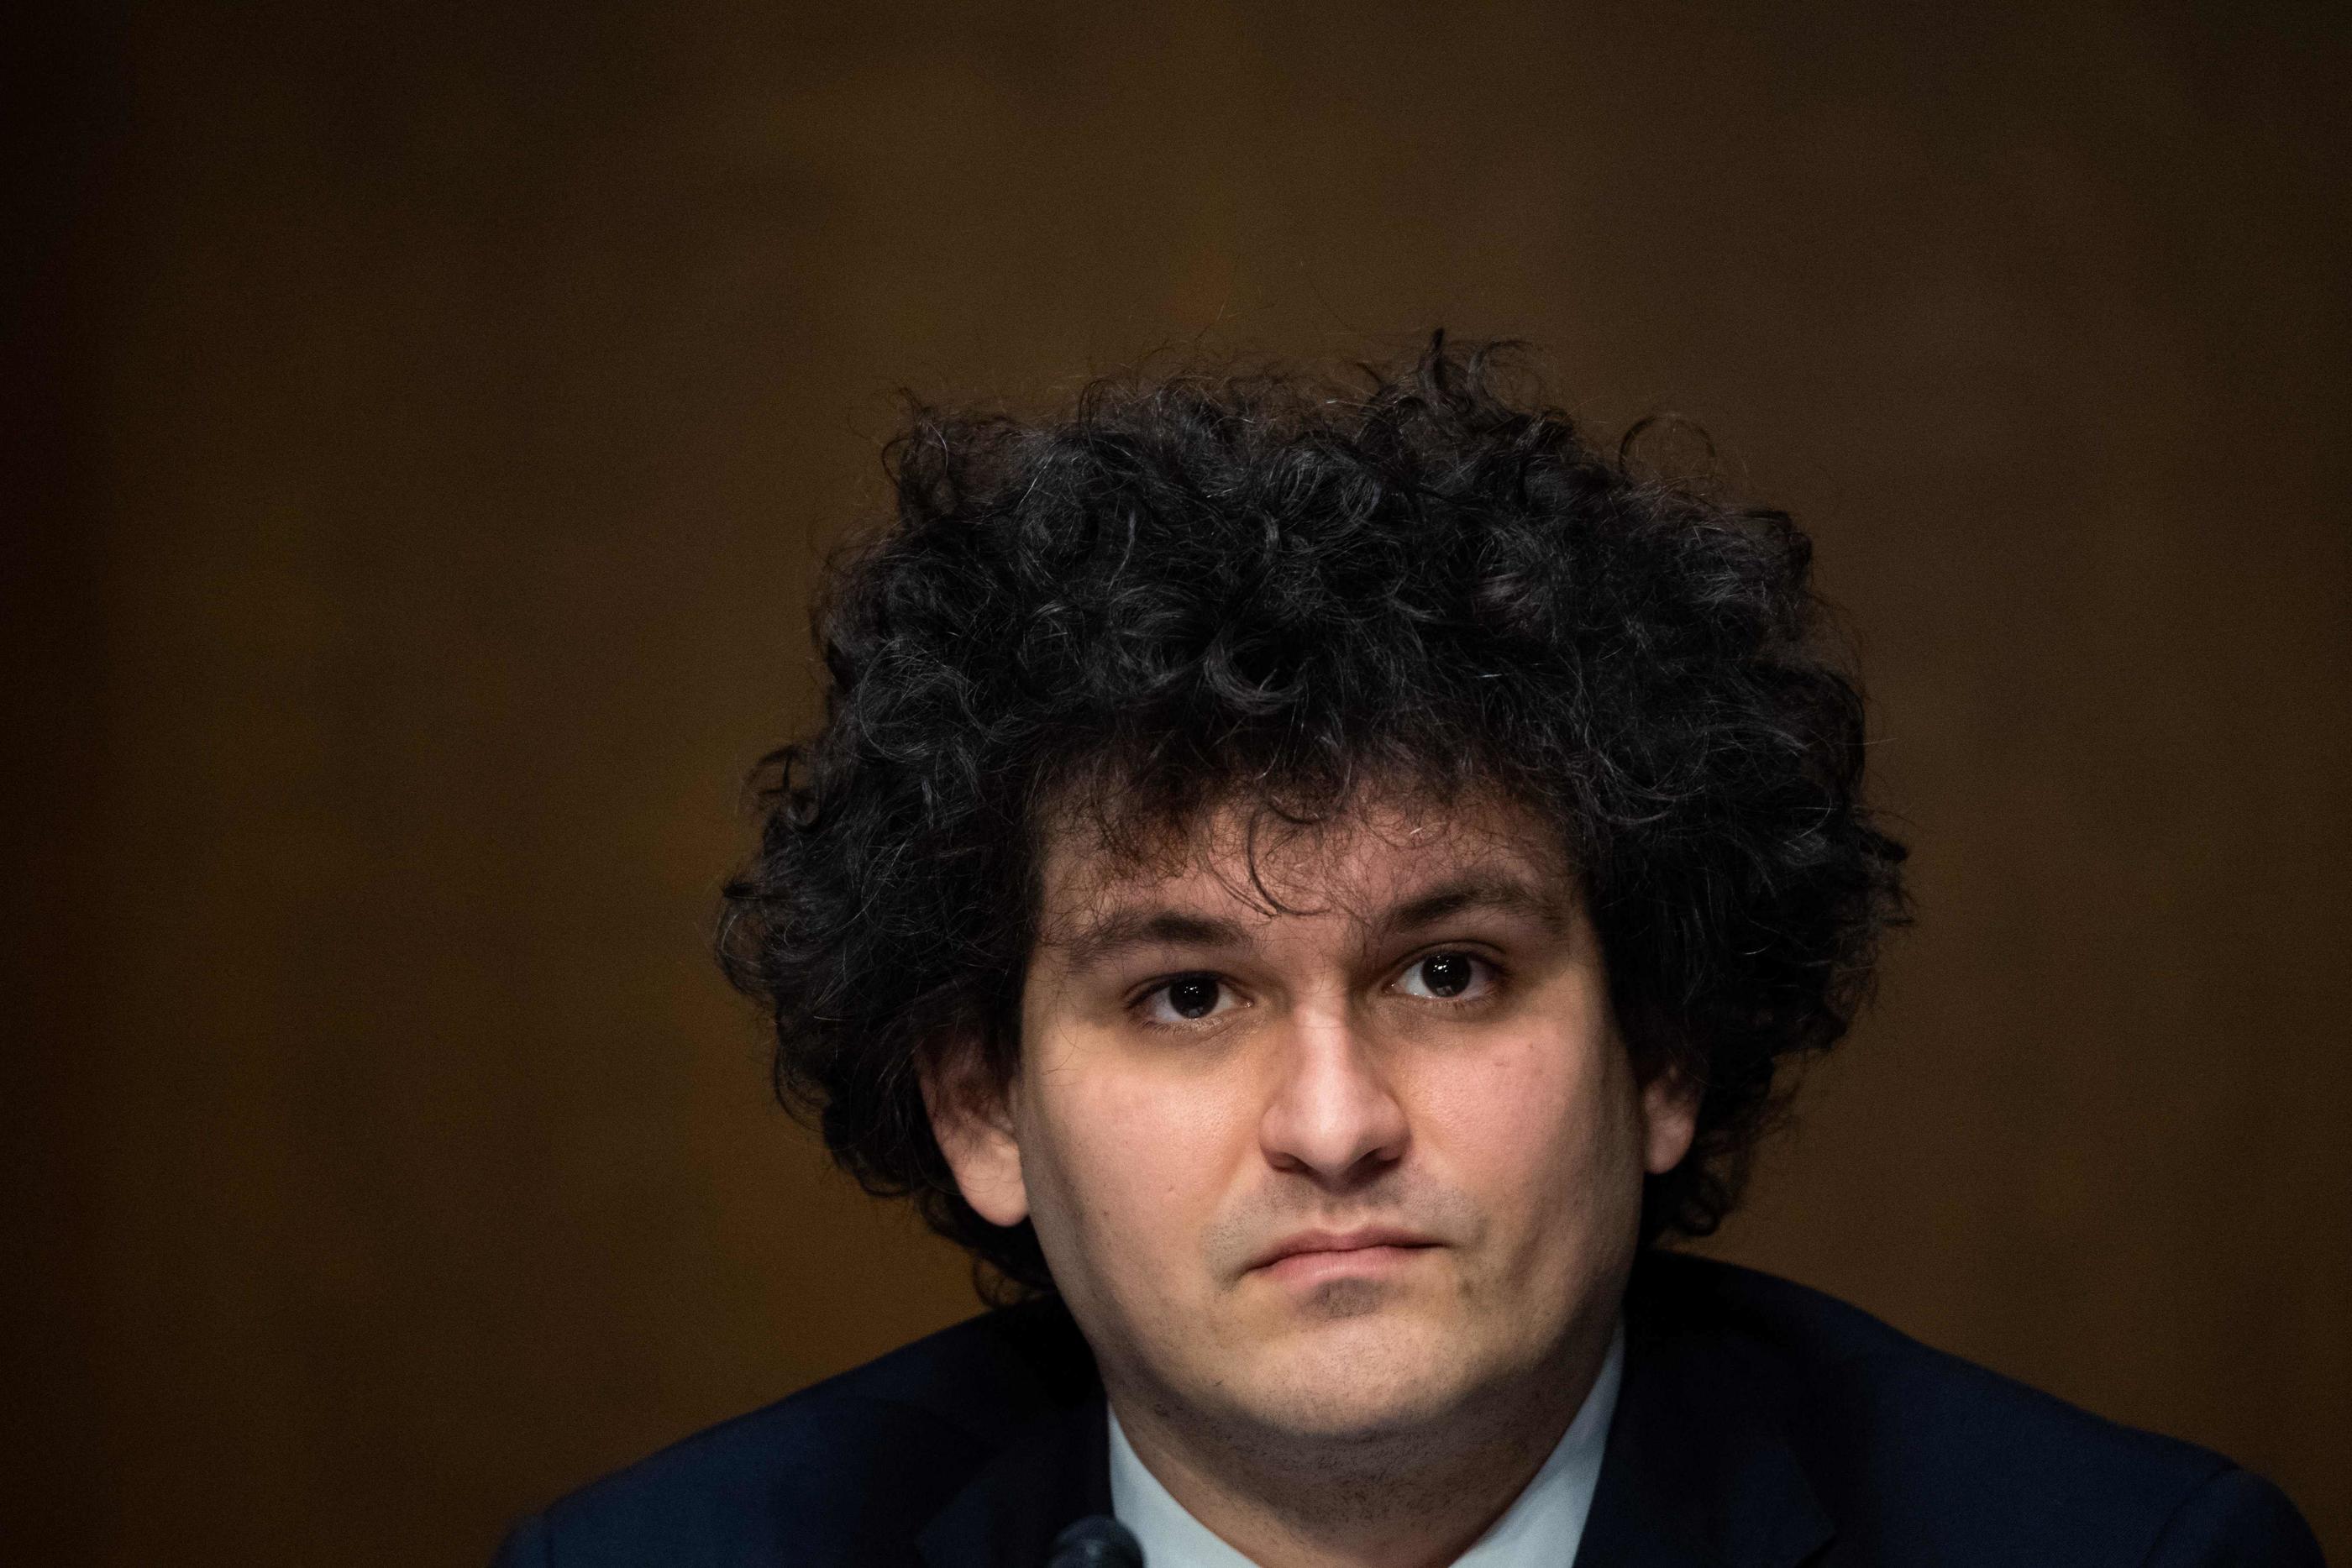 Samuel Bankman-Fried lors d'une audition au Sénat américain en février 2022 (SAUL LOEB / AFP)